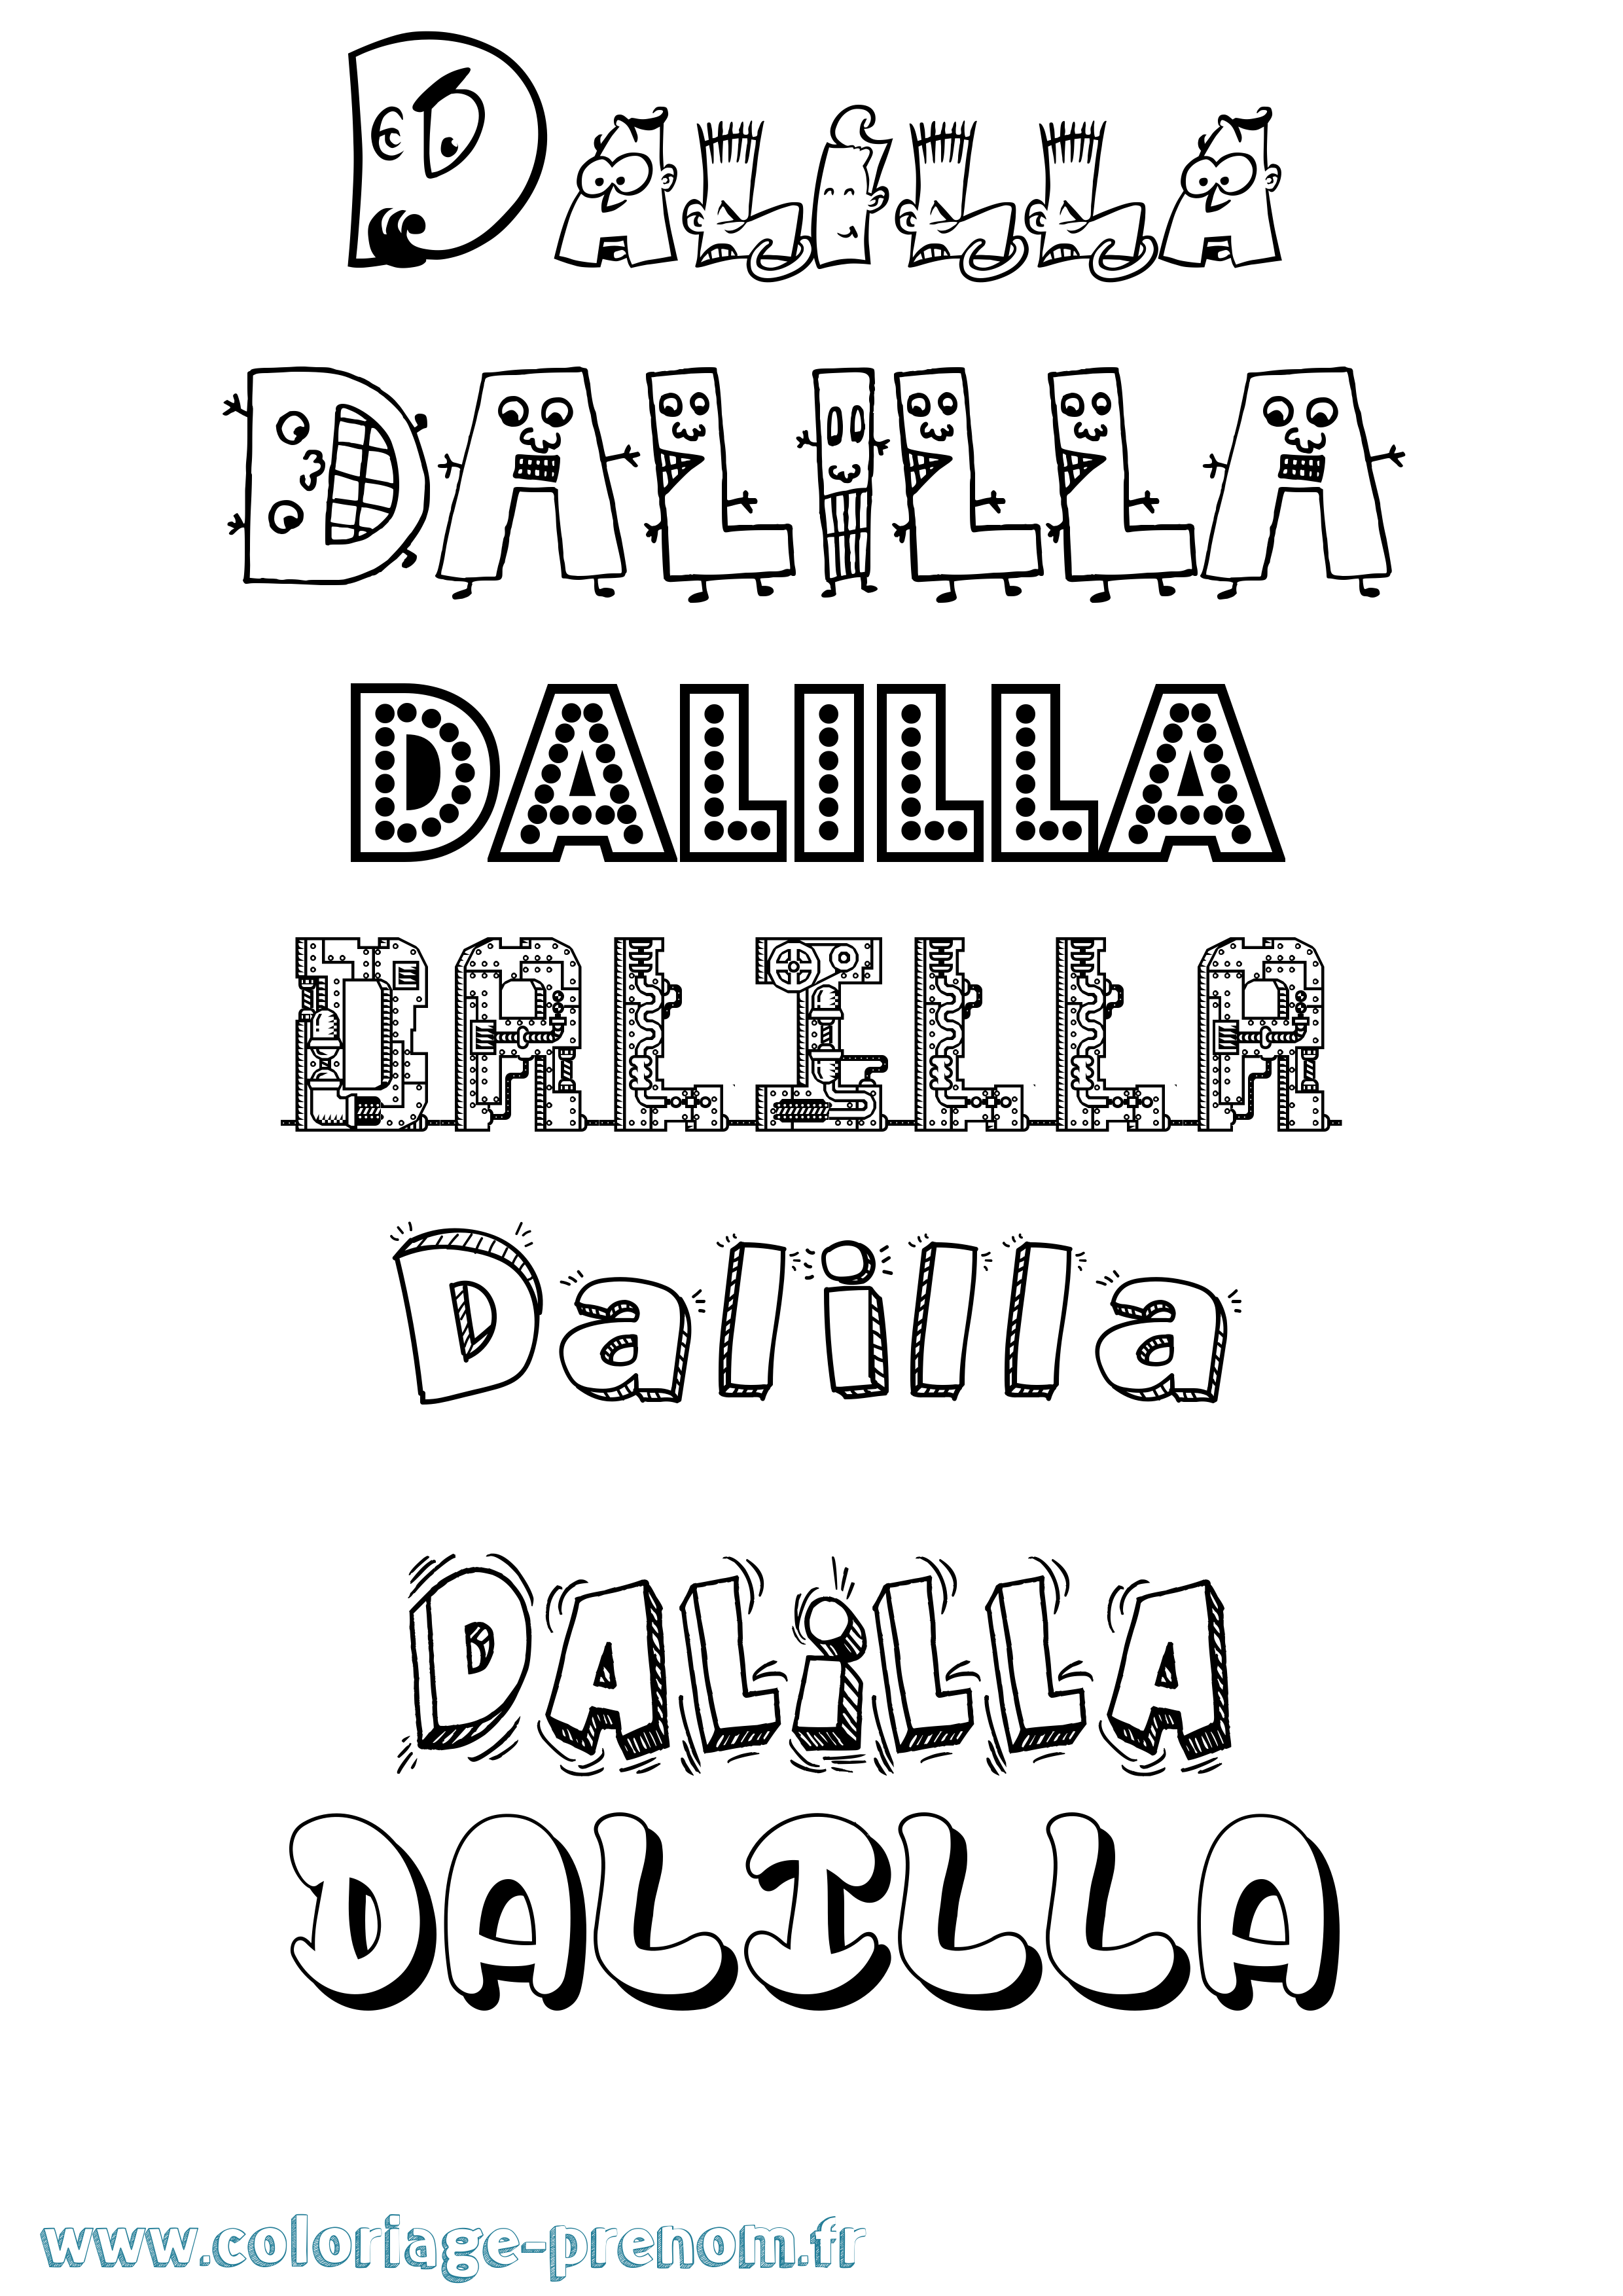 Coloriage prénom Dalilla Fun